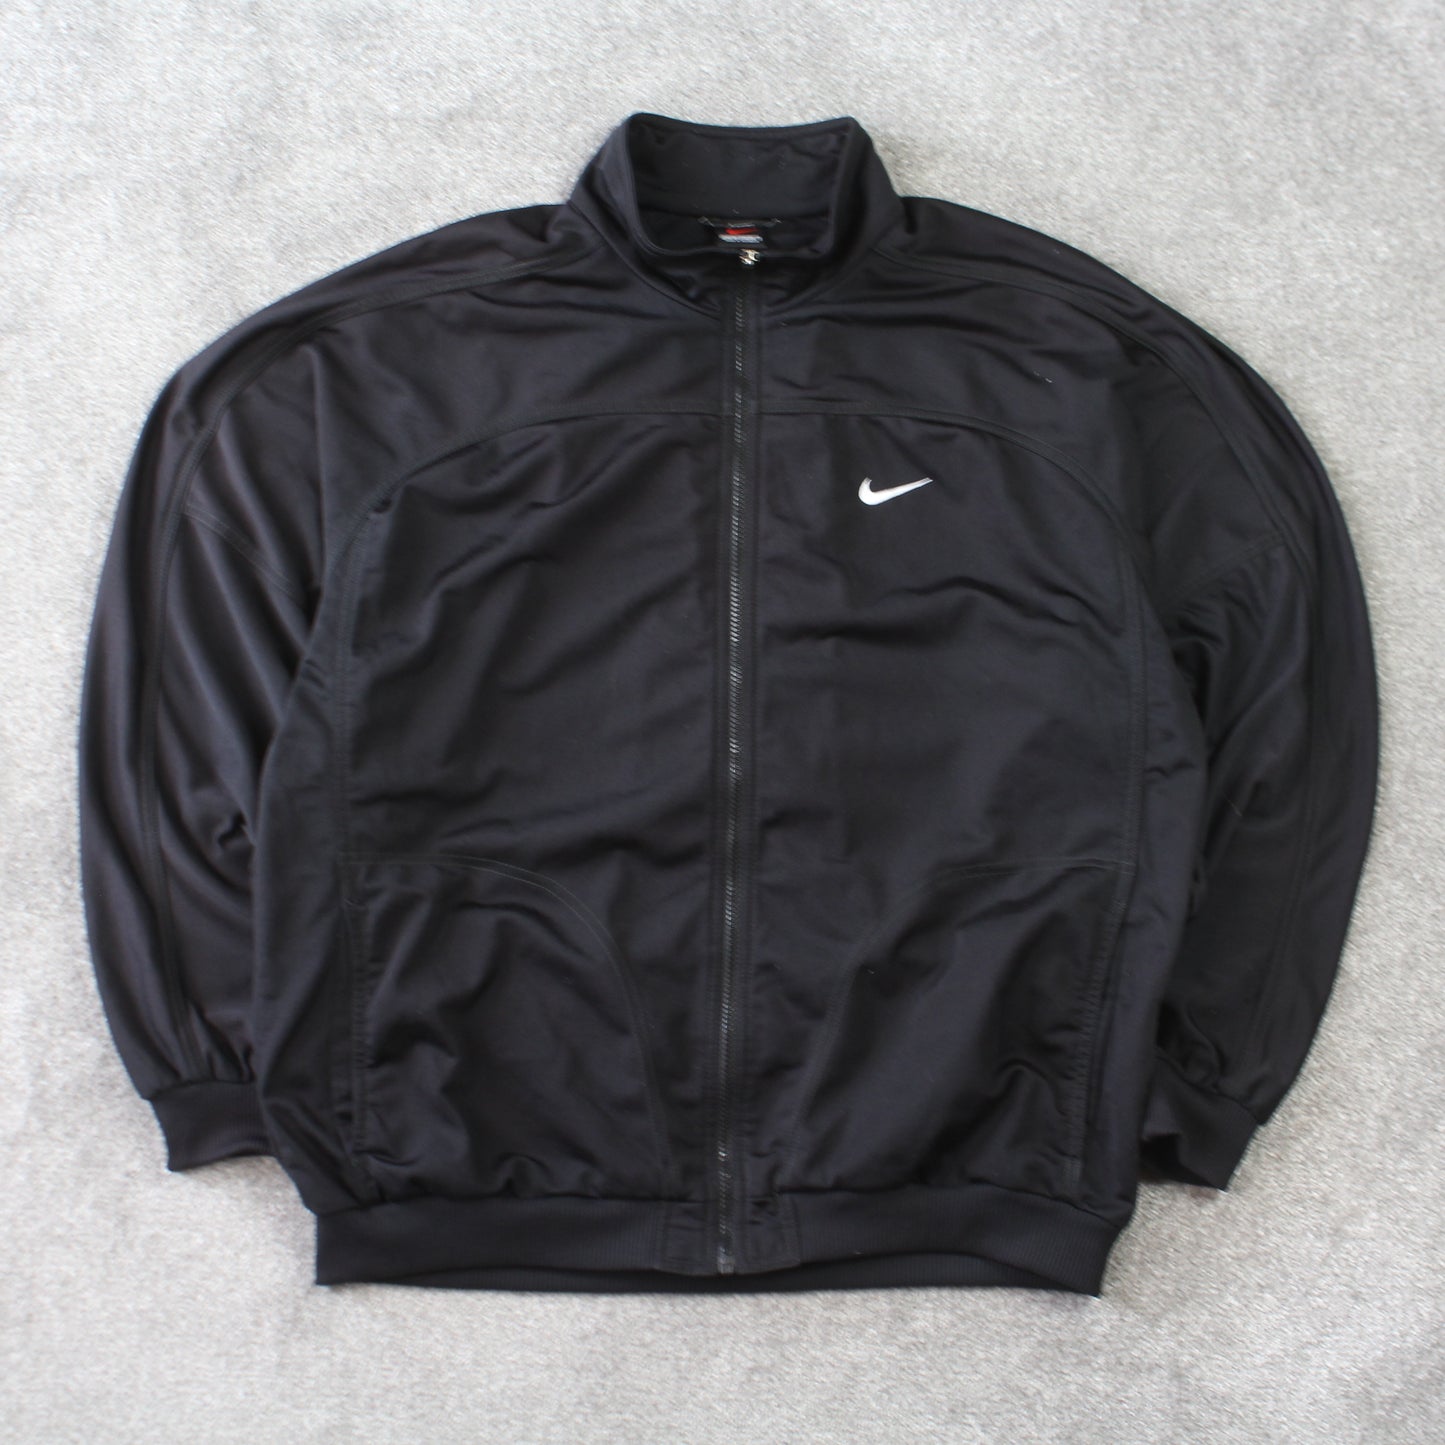 Vintage 1990s Nike Track Jacket Black - (L)